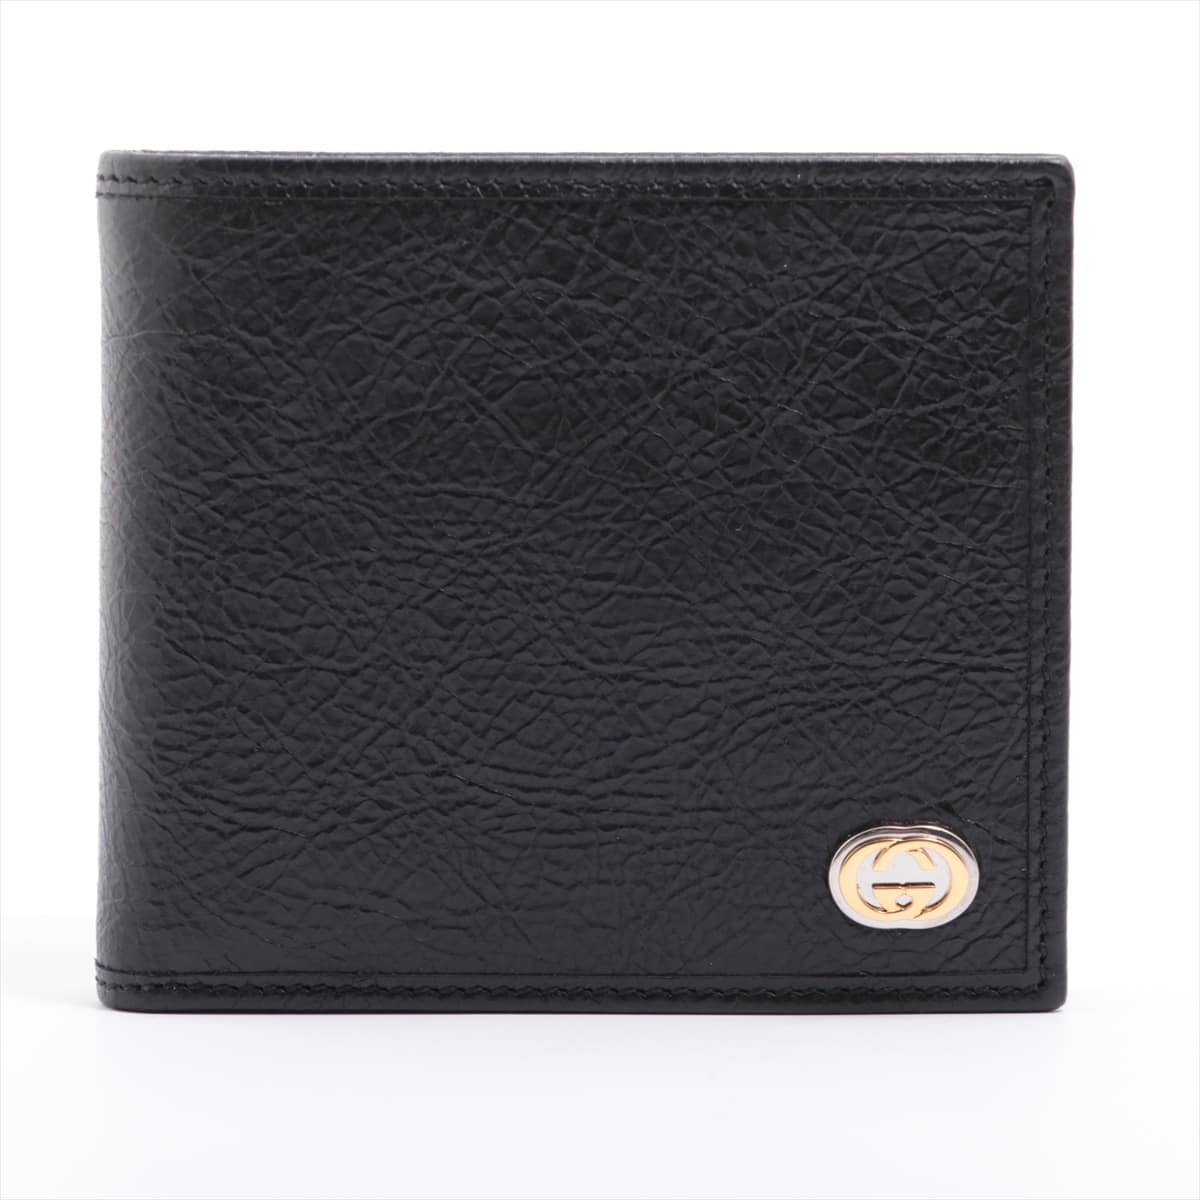 Gucci Interlocking 581527 Leather Wallet bra